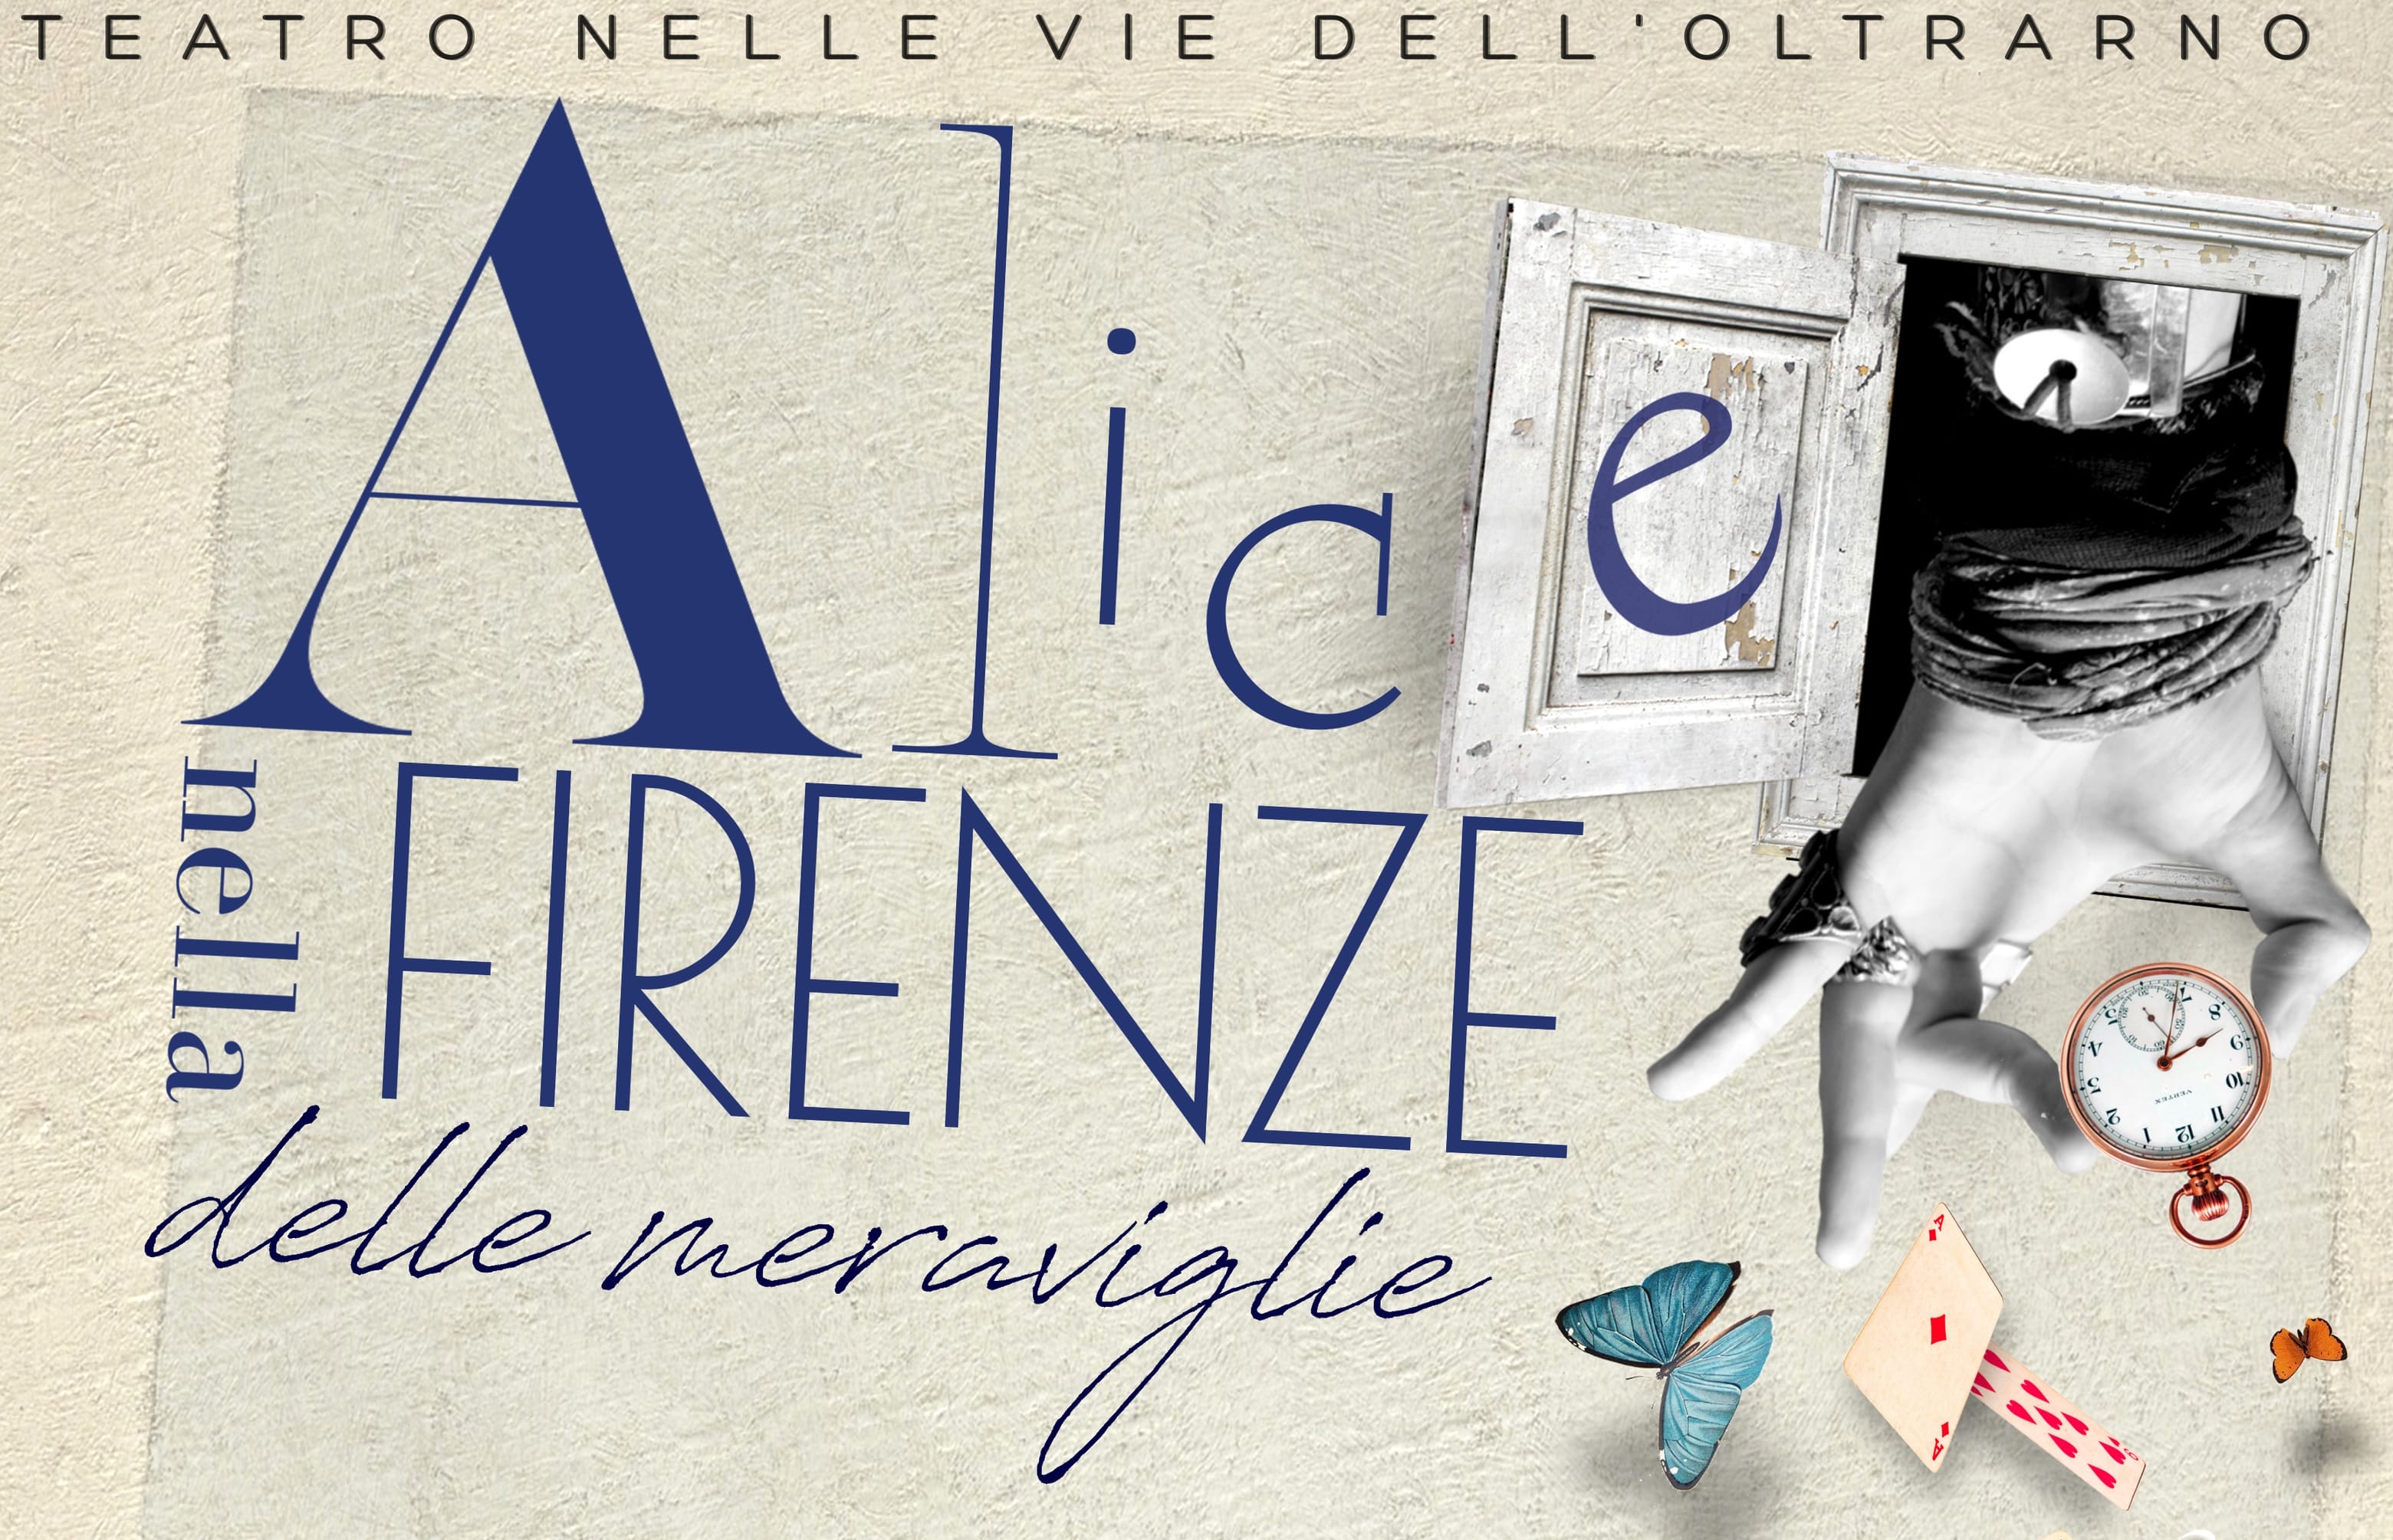 “Alice nella Firenze delle meraviglie”, lo spettacolo itinerante in Oltrarno